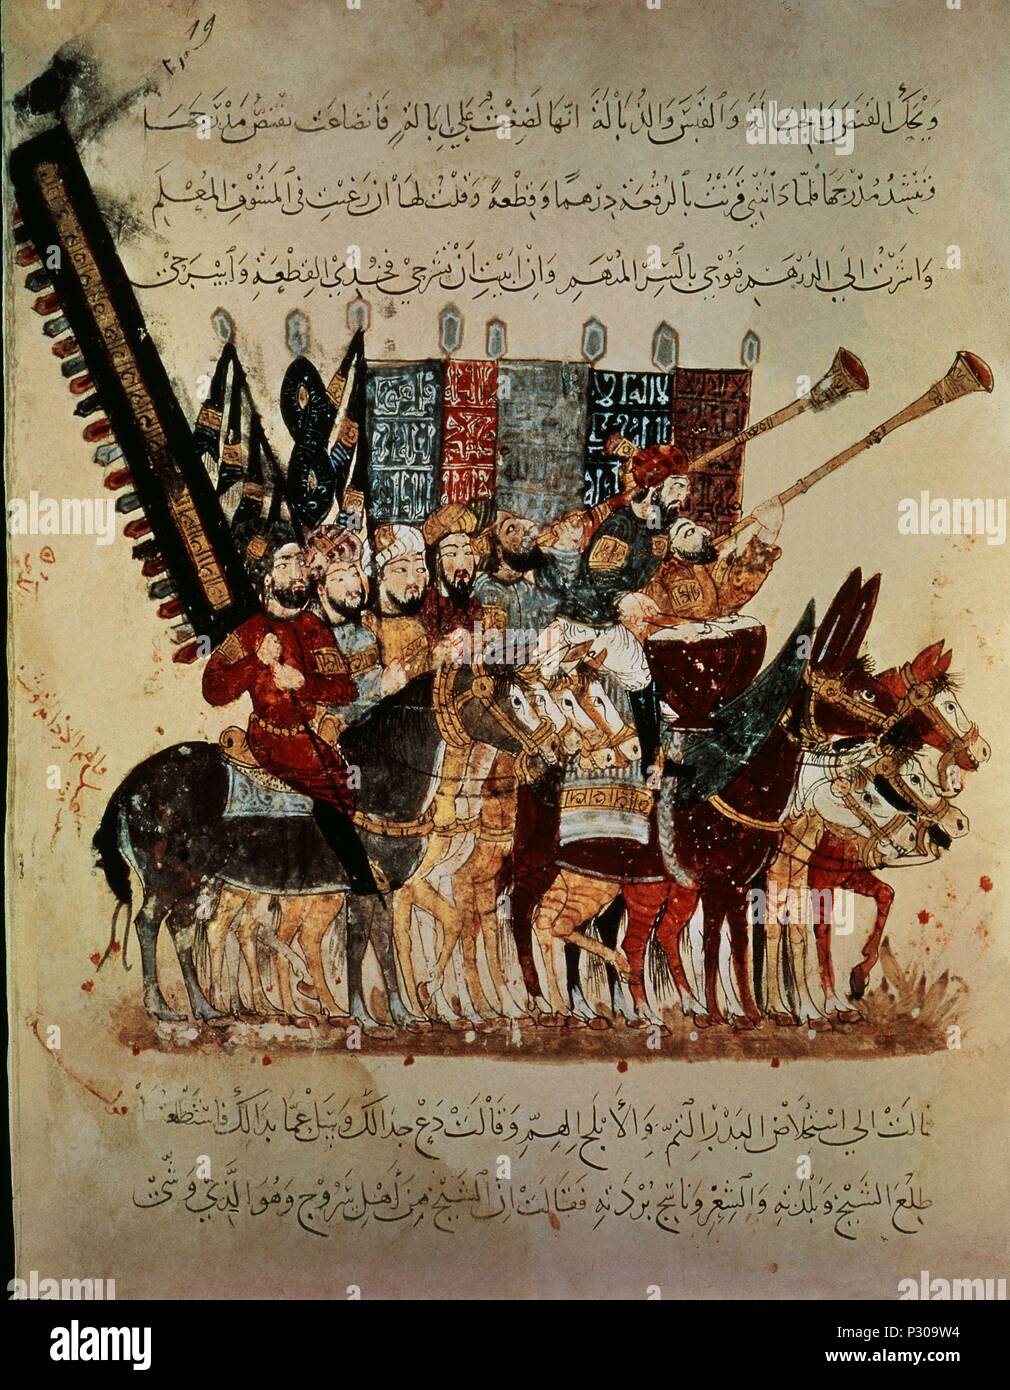 L'illustrato manoscritto arabo Maqamat da Al Hariri : la conquista della Spagna. 1237. Parigi. Autore: Yahya Mahmud ibn al-Wasiti (XIII sec.). Posizione: Biblioteca Nazionale, Francia. Foto Stock